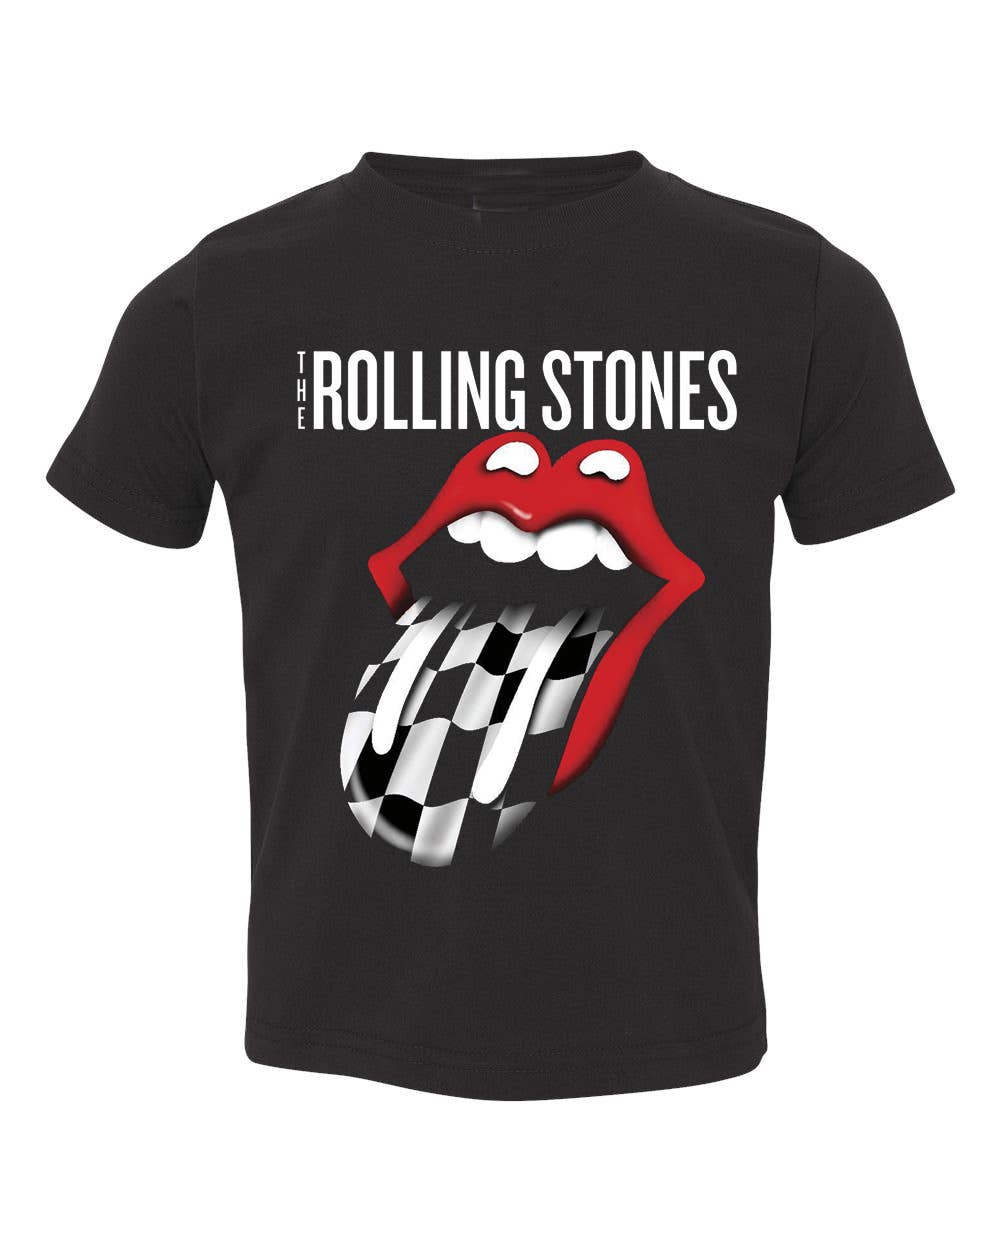 Rolling Stones Zip Code Night Black Graphic Tee